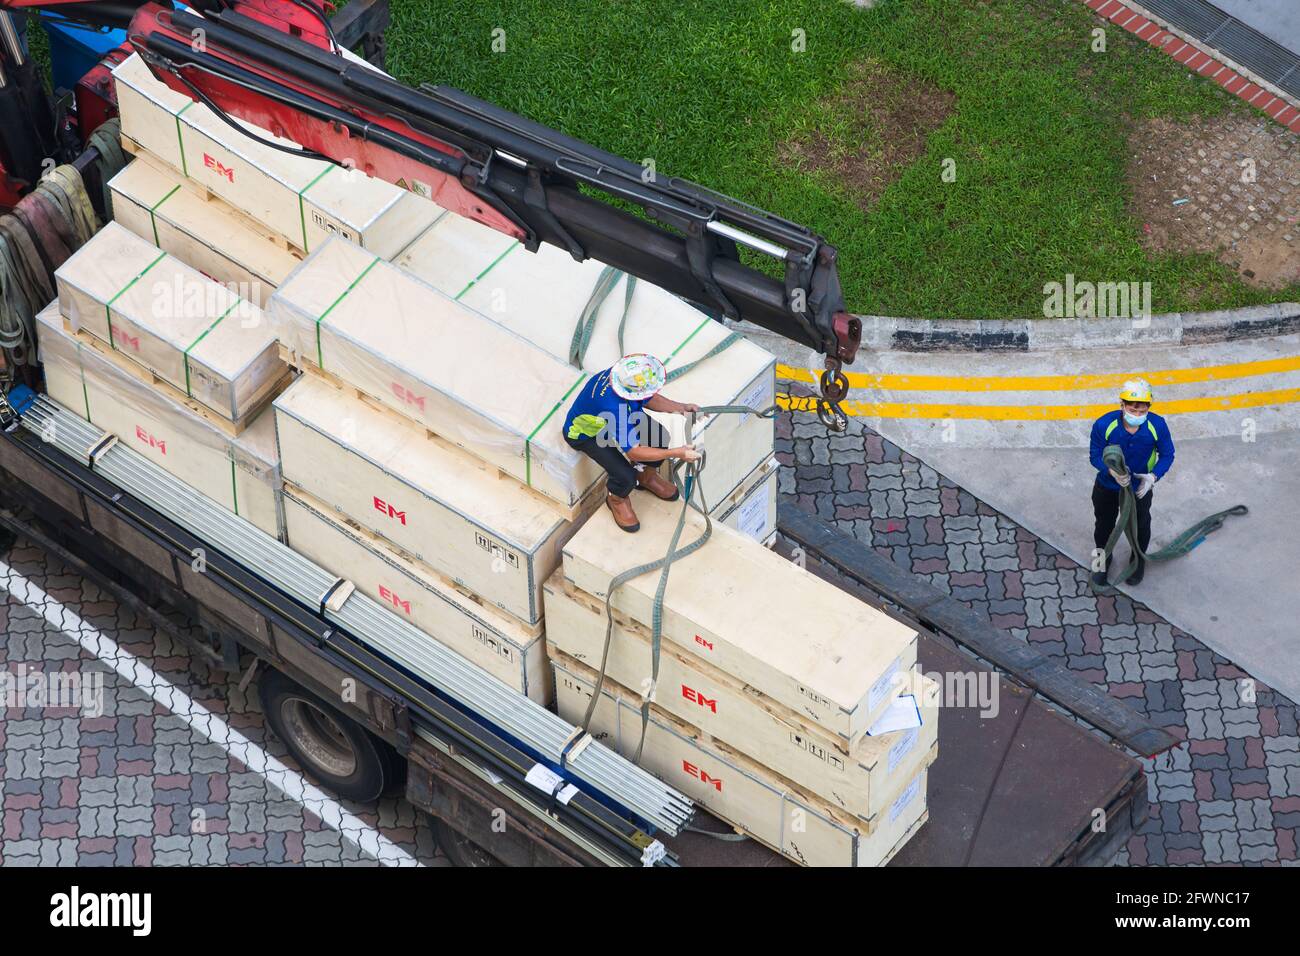 Vue aérienne d'un employé qui enchaîne soigneusement les caisses pour les déplacer et les soulever le long du sol. Banque D'Images